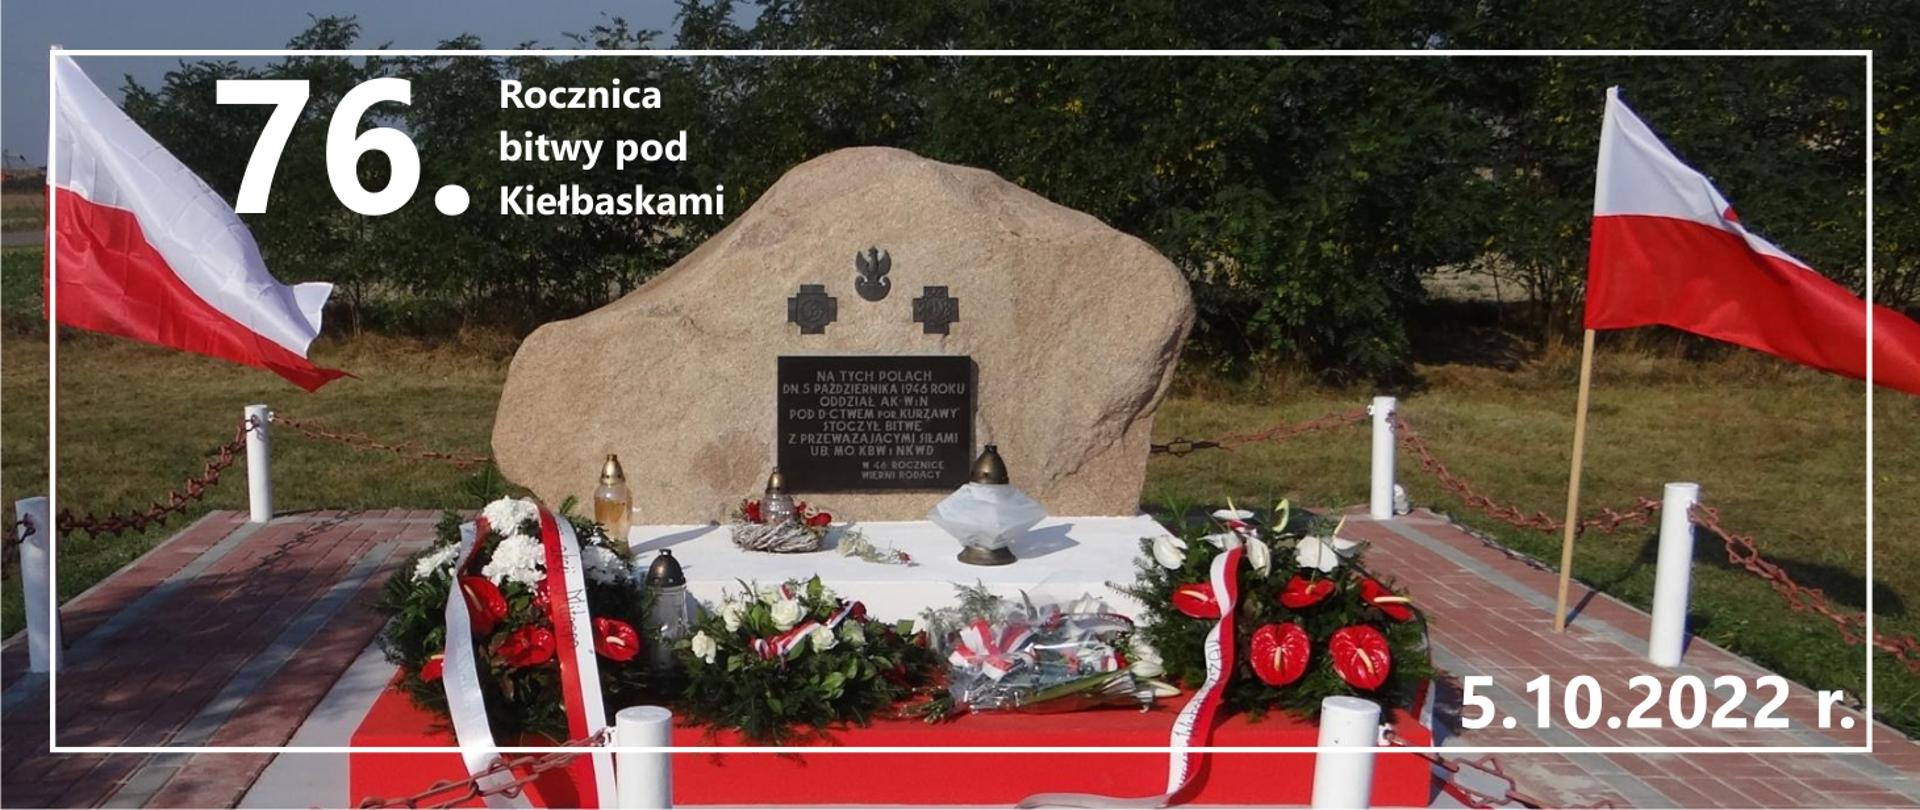 Pomnik upamiętniający bitwę pod Kiełbaskami.